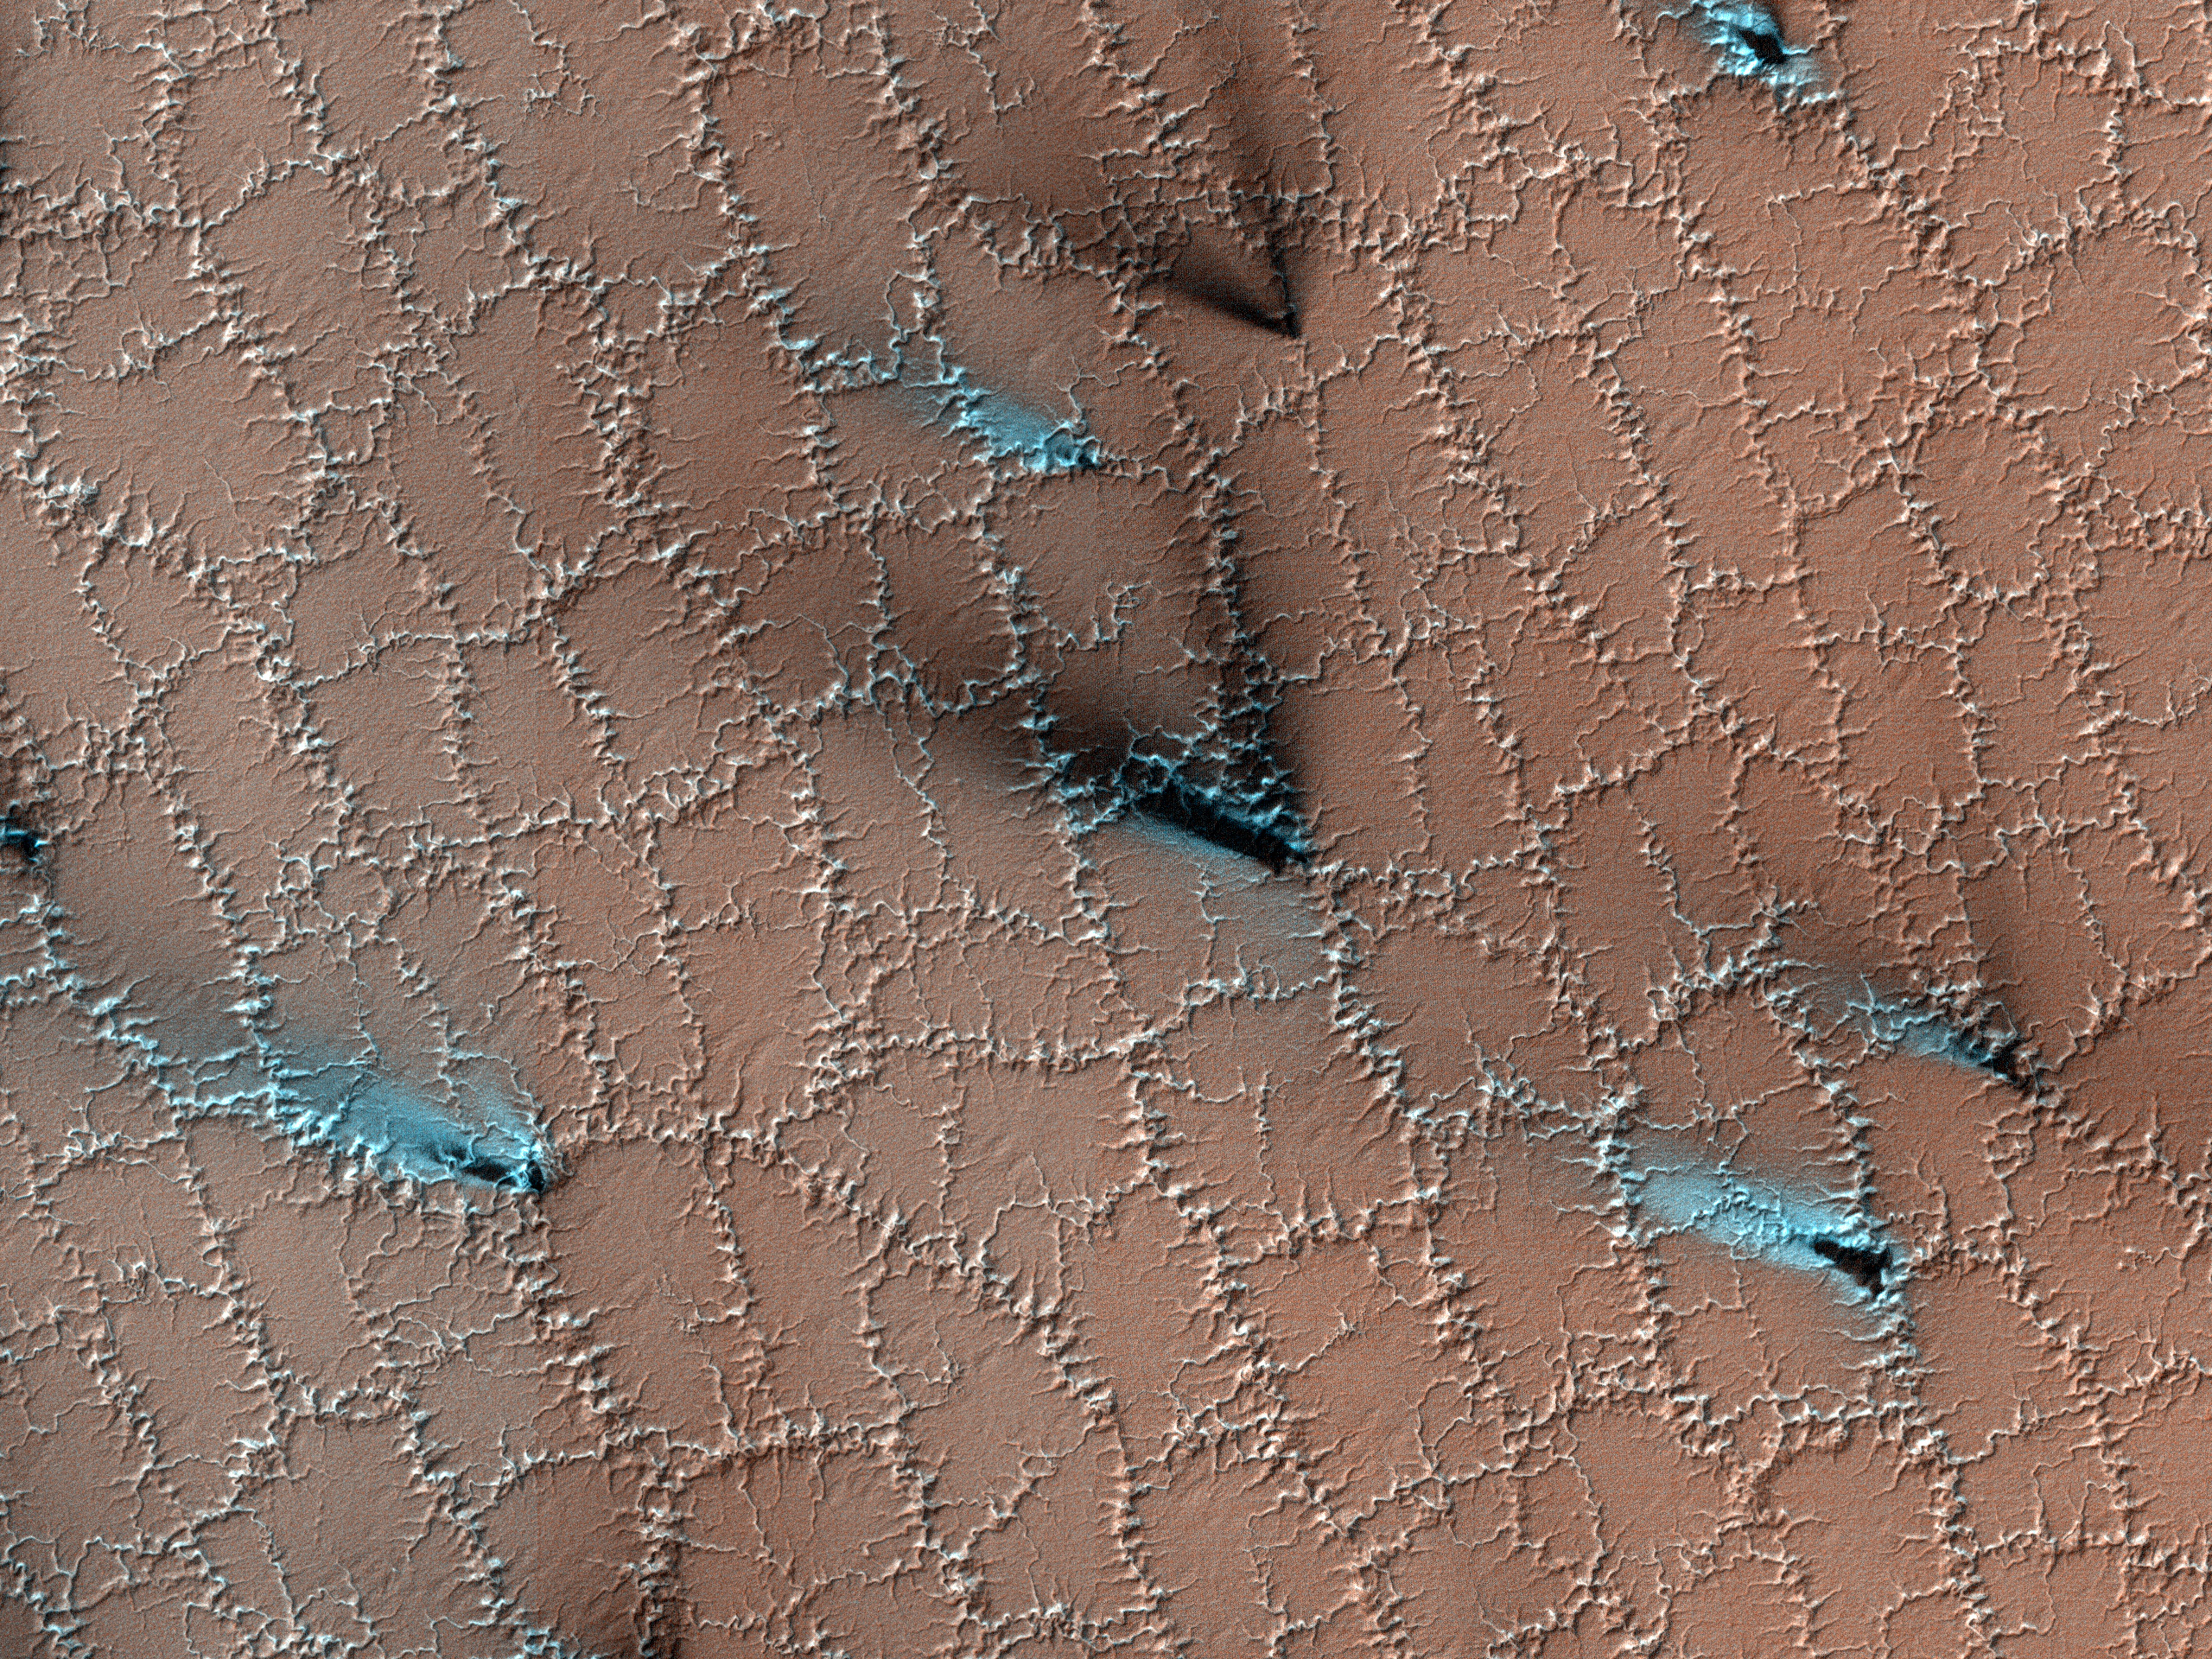 Los extraños patrones de panales en la superficie de Marte han sido notados muchas veces por robots orbitales a lo largo de los años.